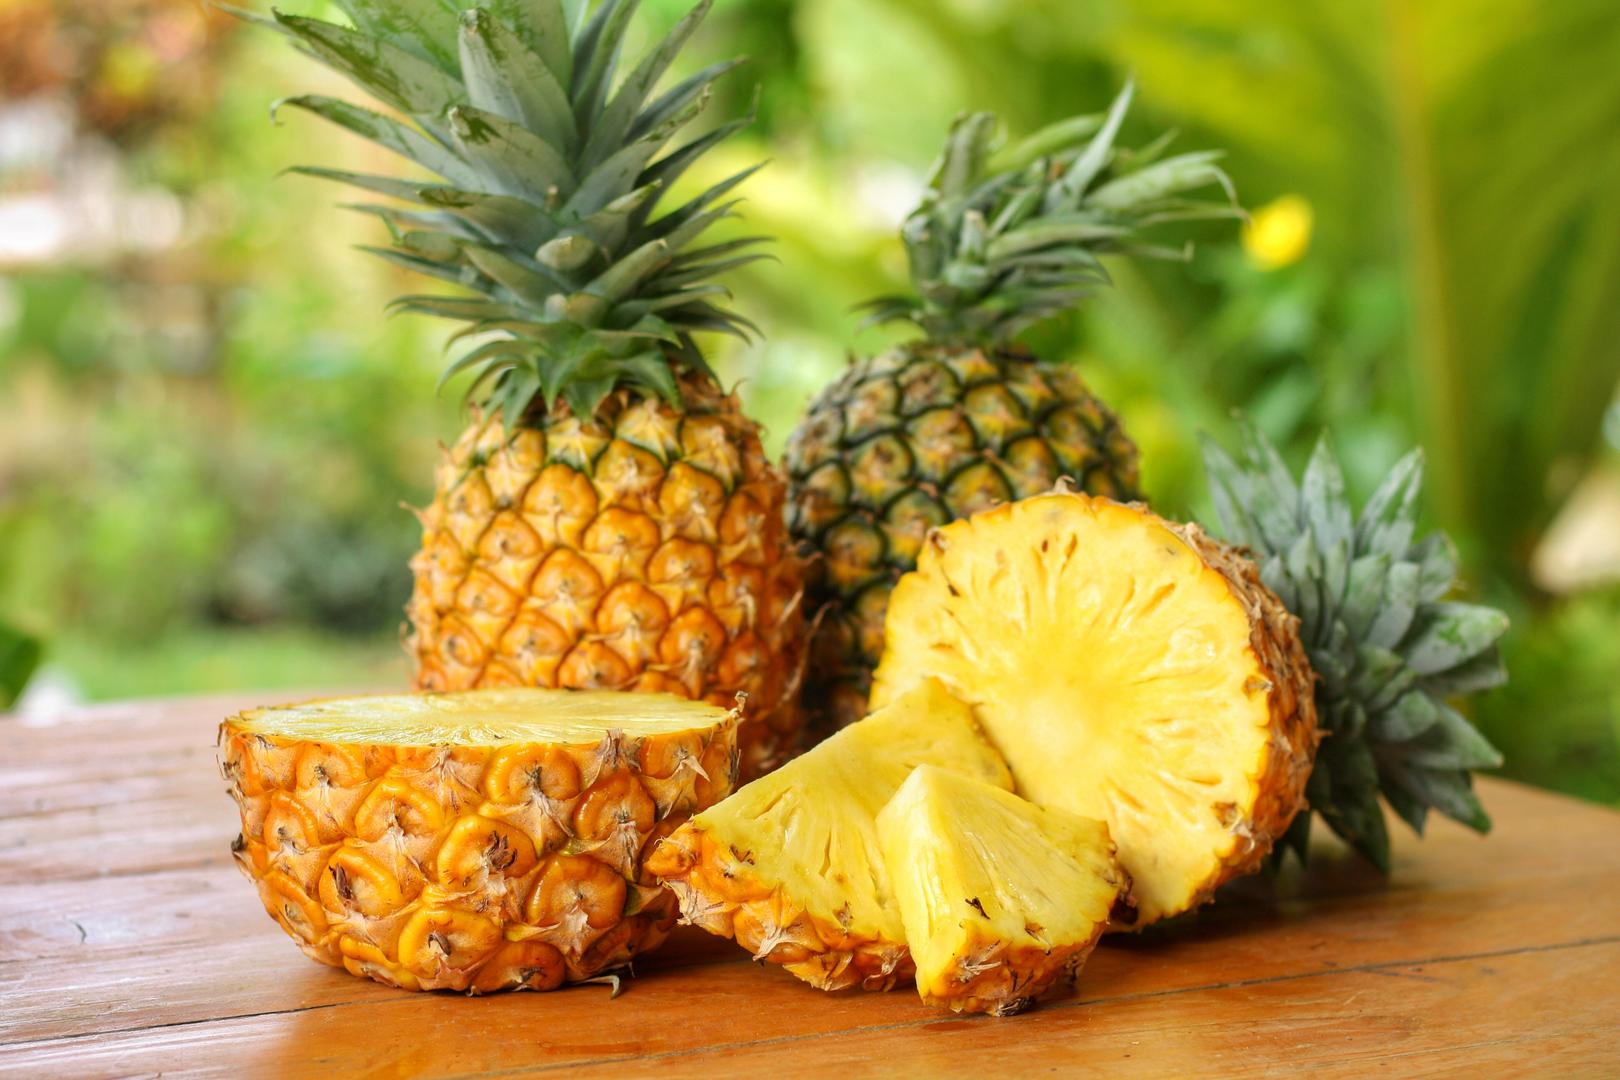 Jezgre i kore od ananasa: Sačuvajte jezgre i kore od ananasa kako biste napravili tepache, fermentirano meksičko piće koje je dobro za crijeva. Baš kao i ostatak ananasa, jezgra je puna vlakana i enzima koji pomažu u probavi. Kora je nešto grublja od kora ostalog voća i nema tako slatkast okus - ali u kombinaciji s ostalim sastojcima koji se koriste za stvaranje tepachea bit će neprimjetna. 